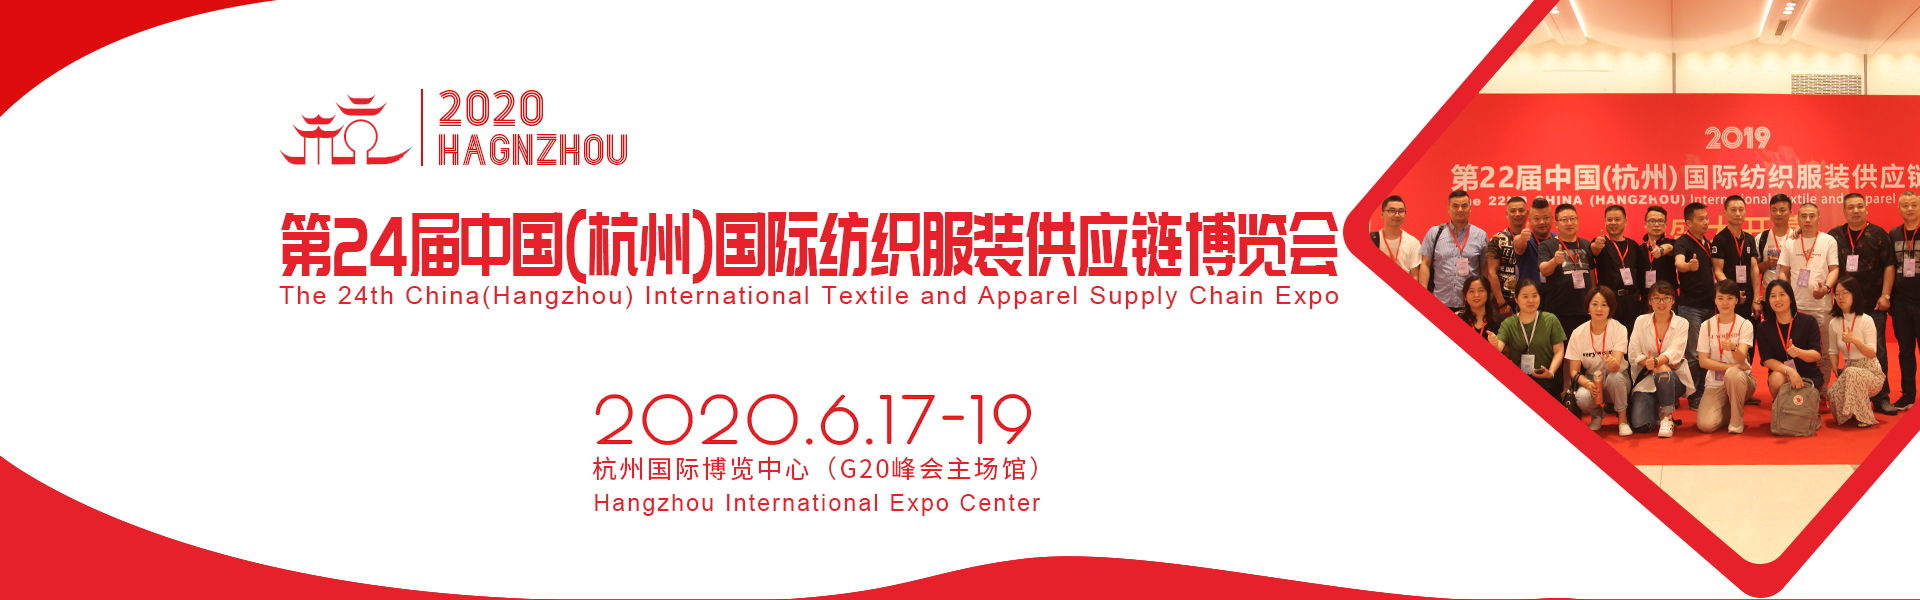 2020第24届中国(杭州)国际纺织服装供应链展览会